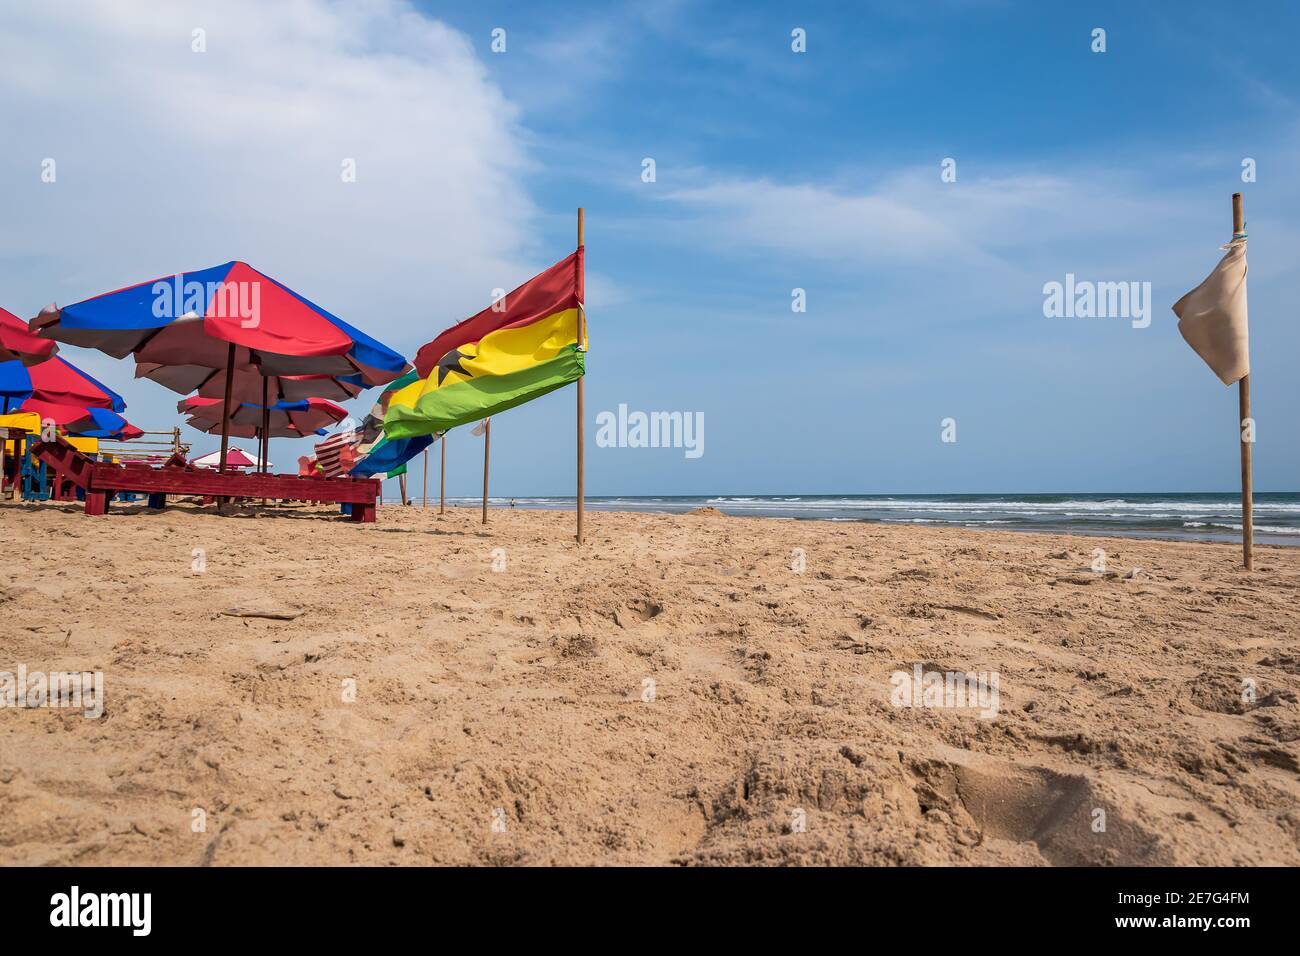 Ein Strand ohne Touristen und mit Flaggen aus verschiedenen Ländern Accra Ghana Westafrika Stockfoto